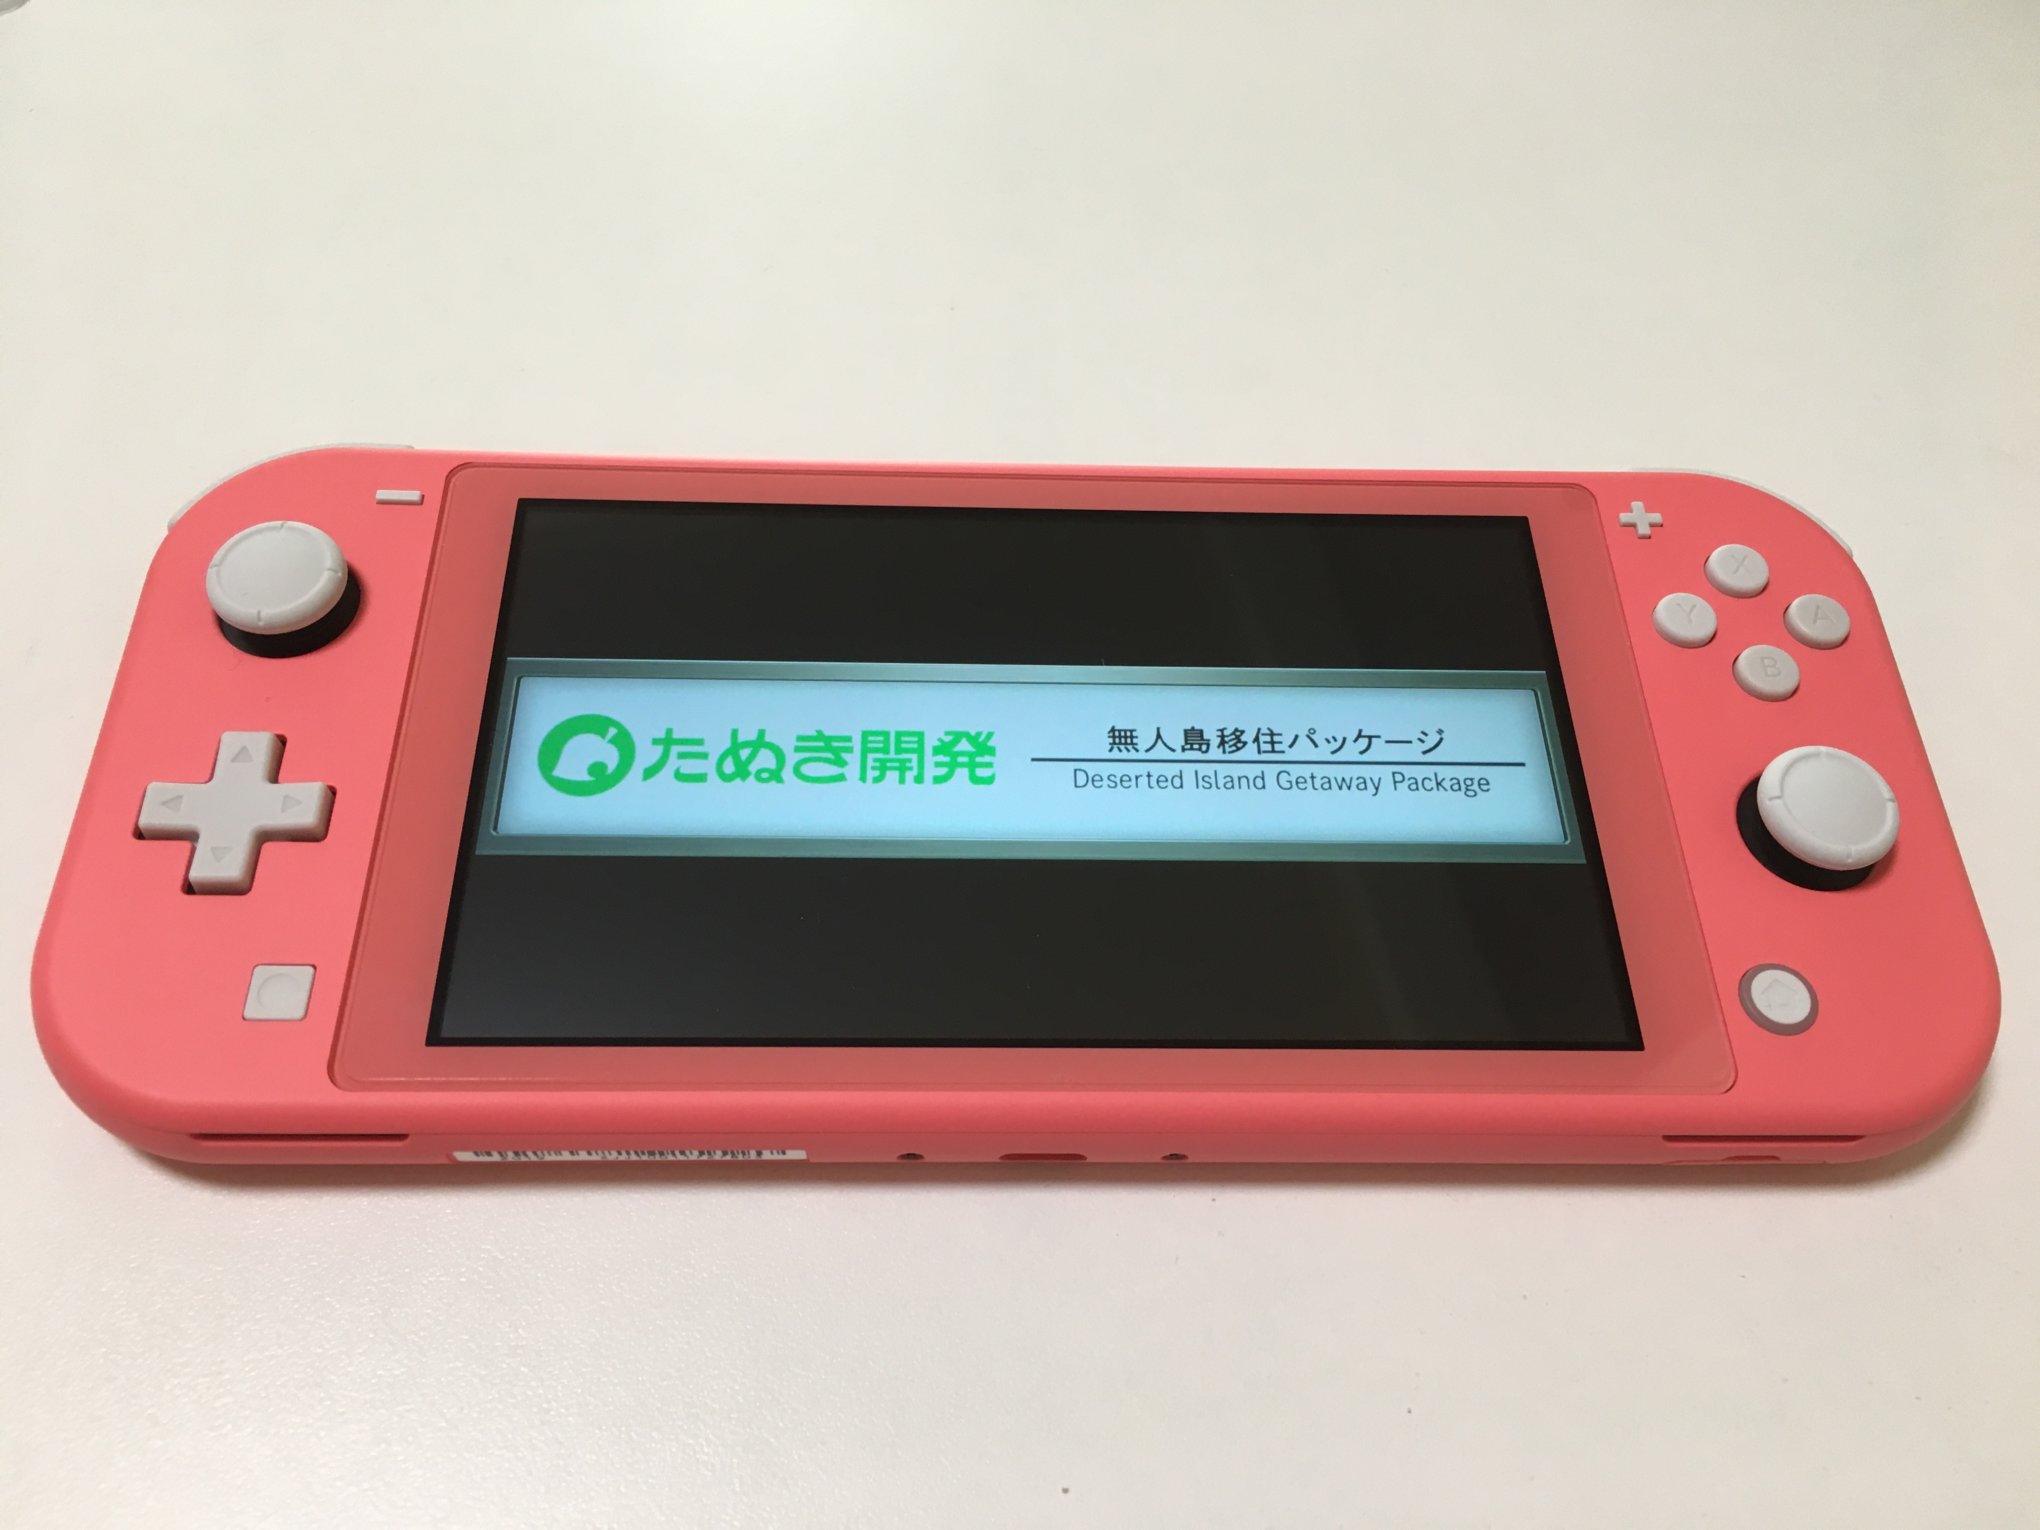 ブラウン系100%正規品 Nintendo Switch Lite コーラル ピンク 家庭用ゲーム本体  テレビゲームブラウン系-WWW.MARENGOEF.COM